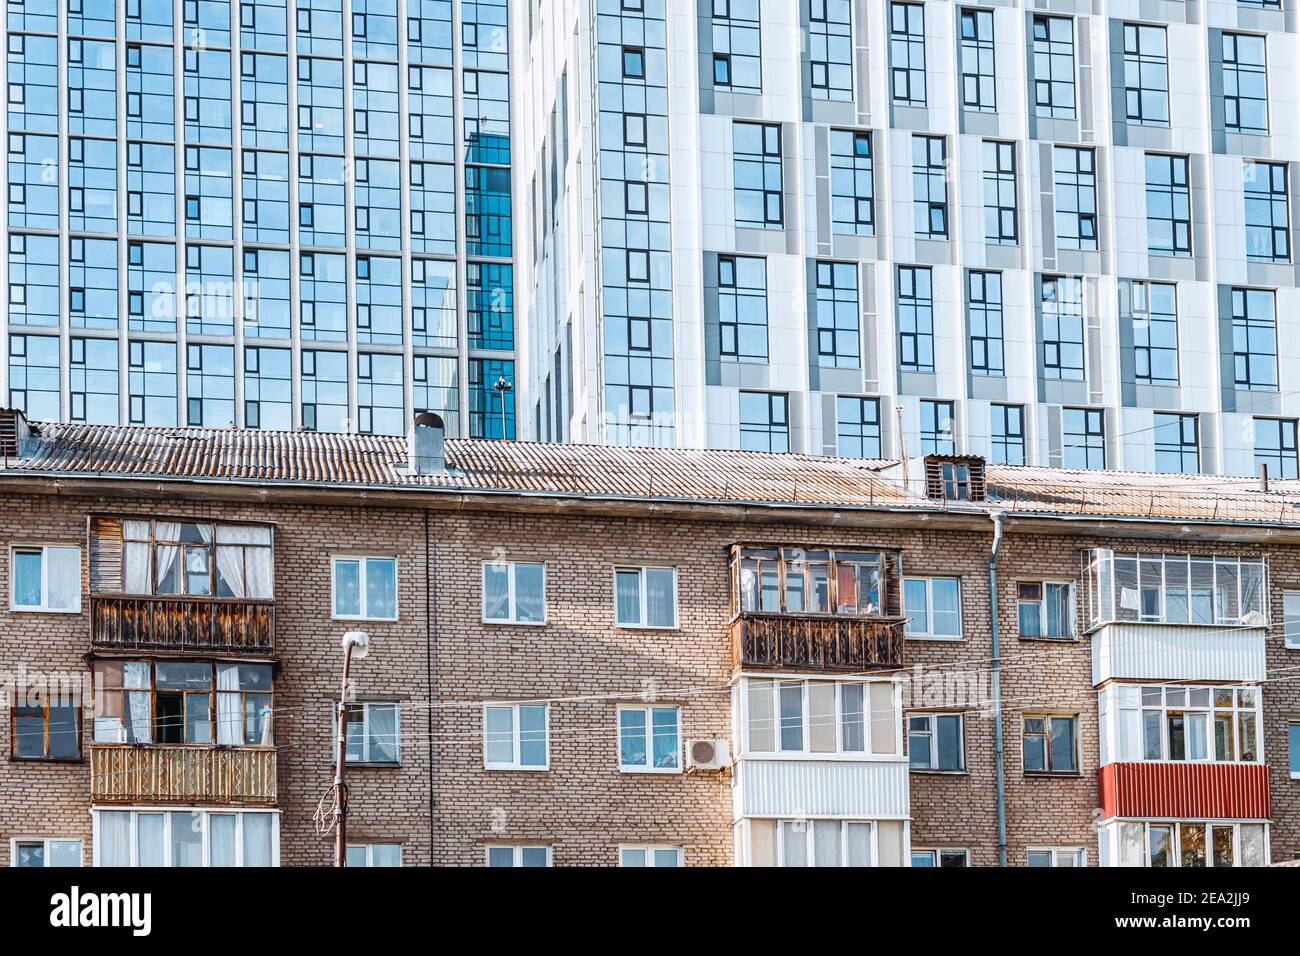 Edificios residenciales antiguos y nuevos como ejemplo de lo social estratificación entre ricos y pobres Foto de stock